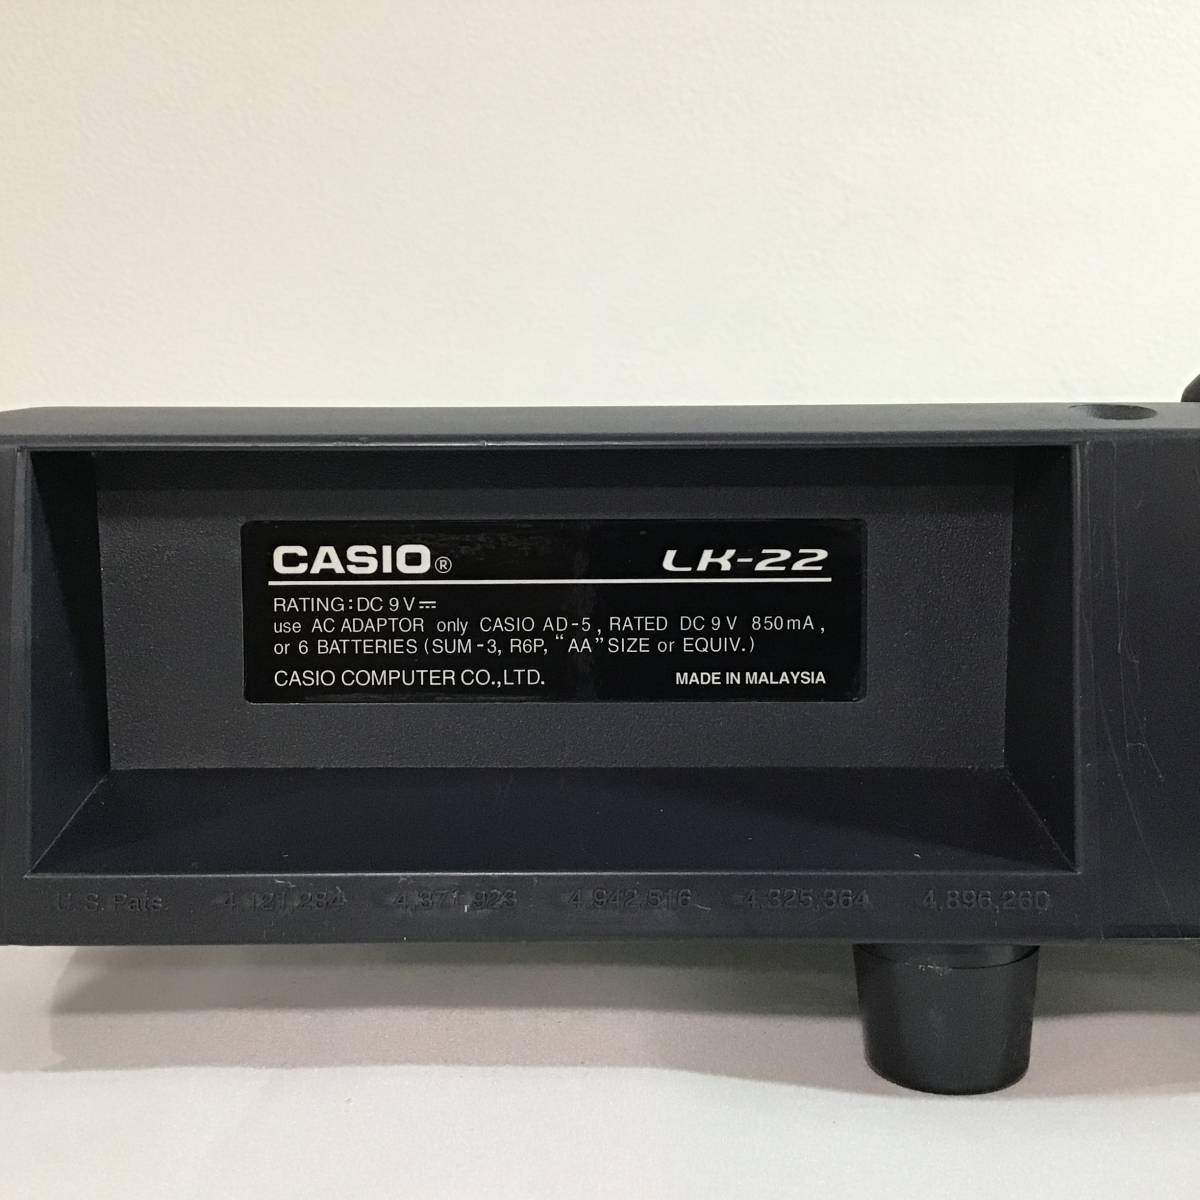 D-765* свет навигация 49 ключ клавиатура LK-22 CASIO Casio * рабочее состояние подтверждено ( корпус * шнур электропитания только )